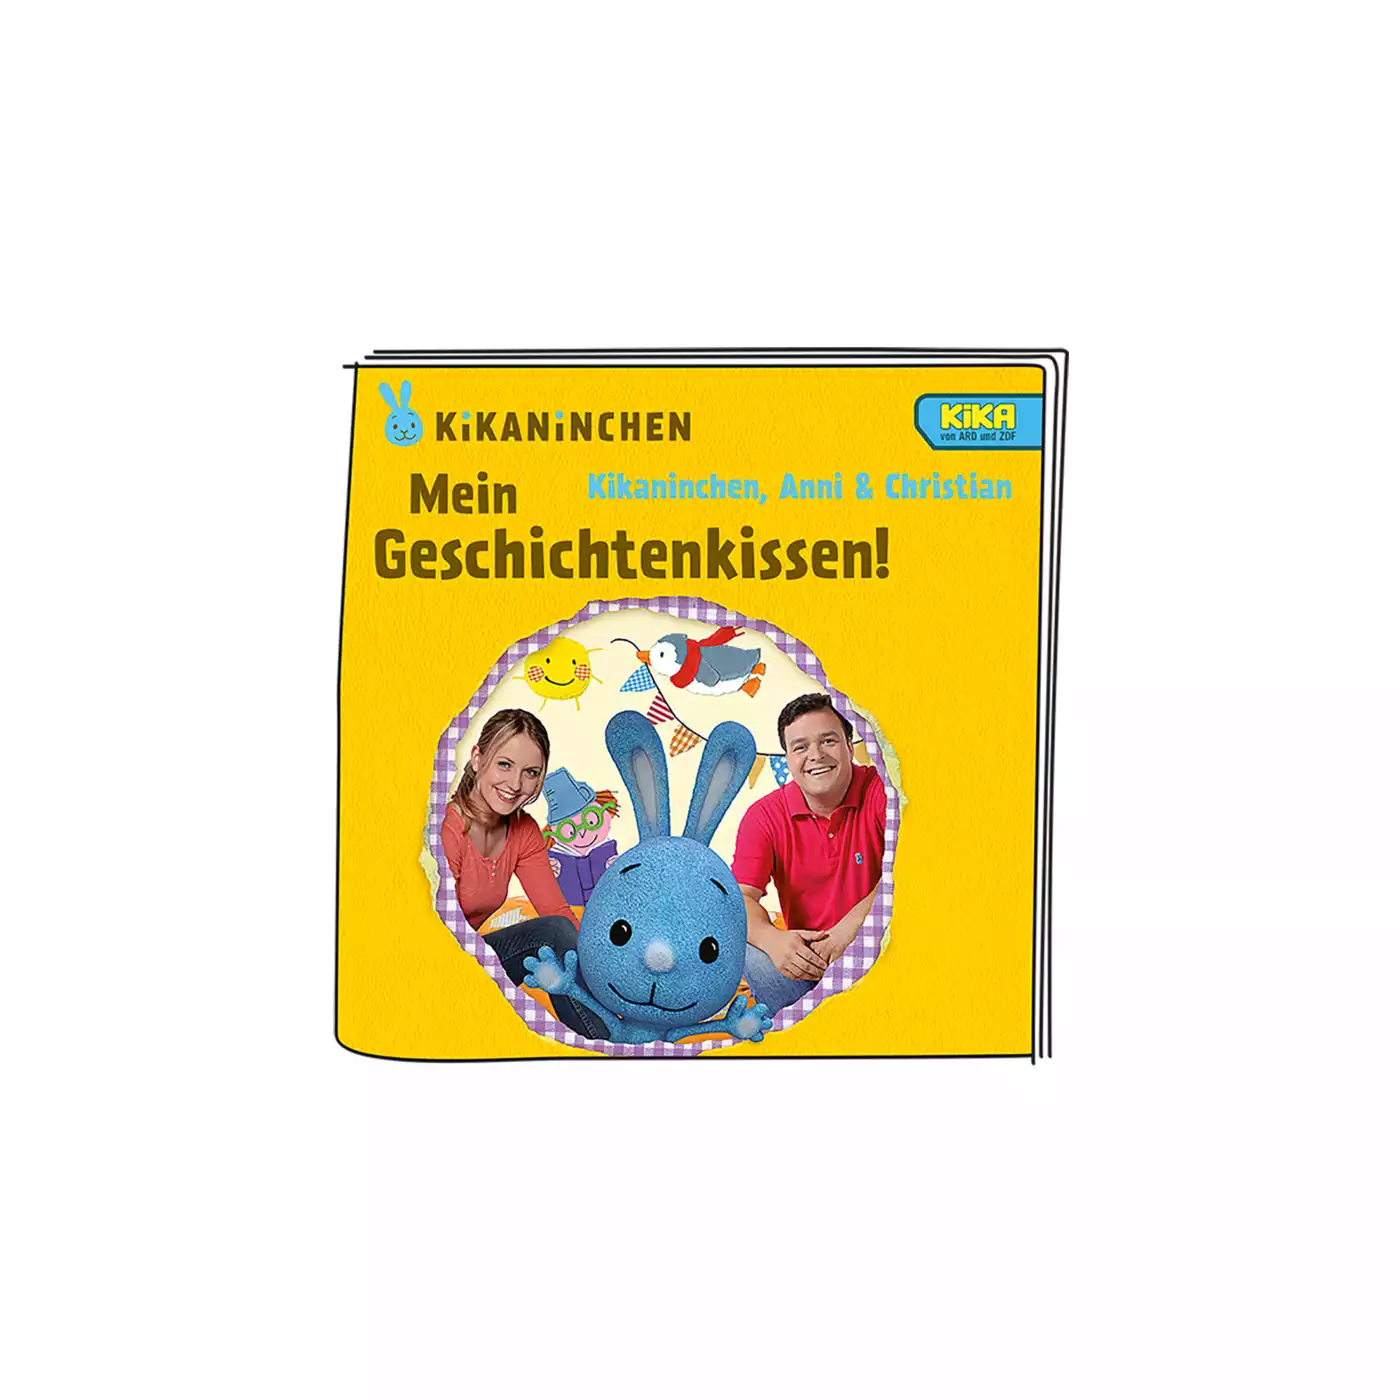 Kikaninchen - Mein Geschichtenkissen tonies 2000572898607 5